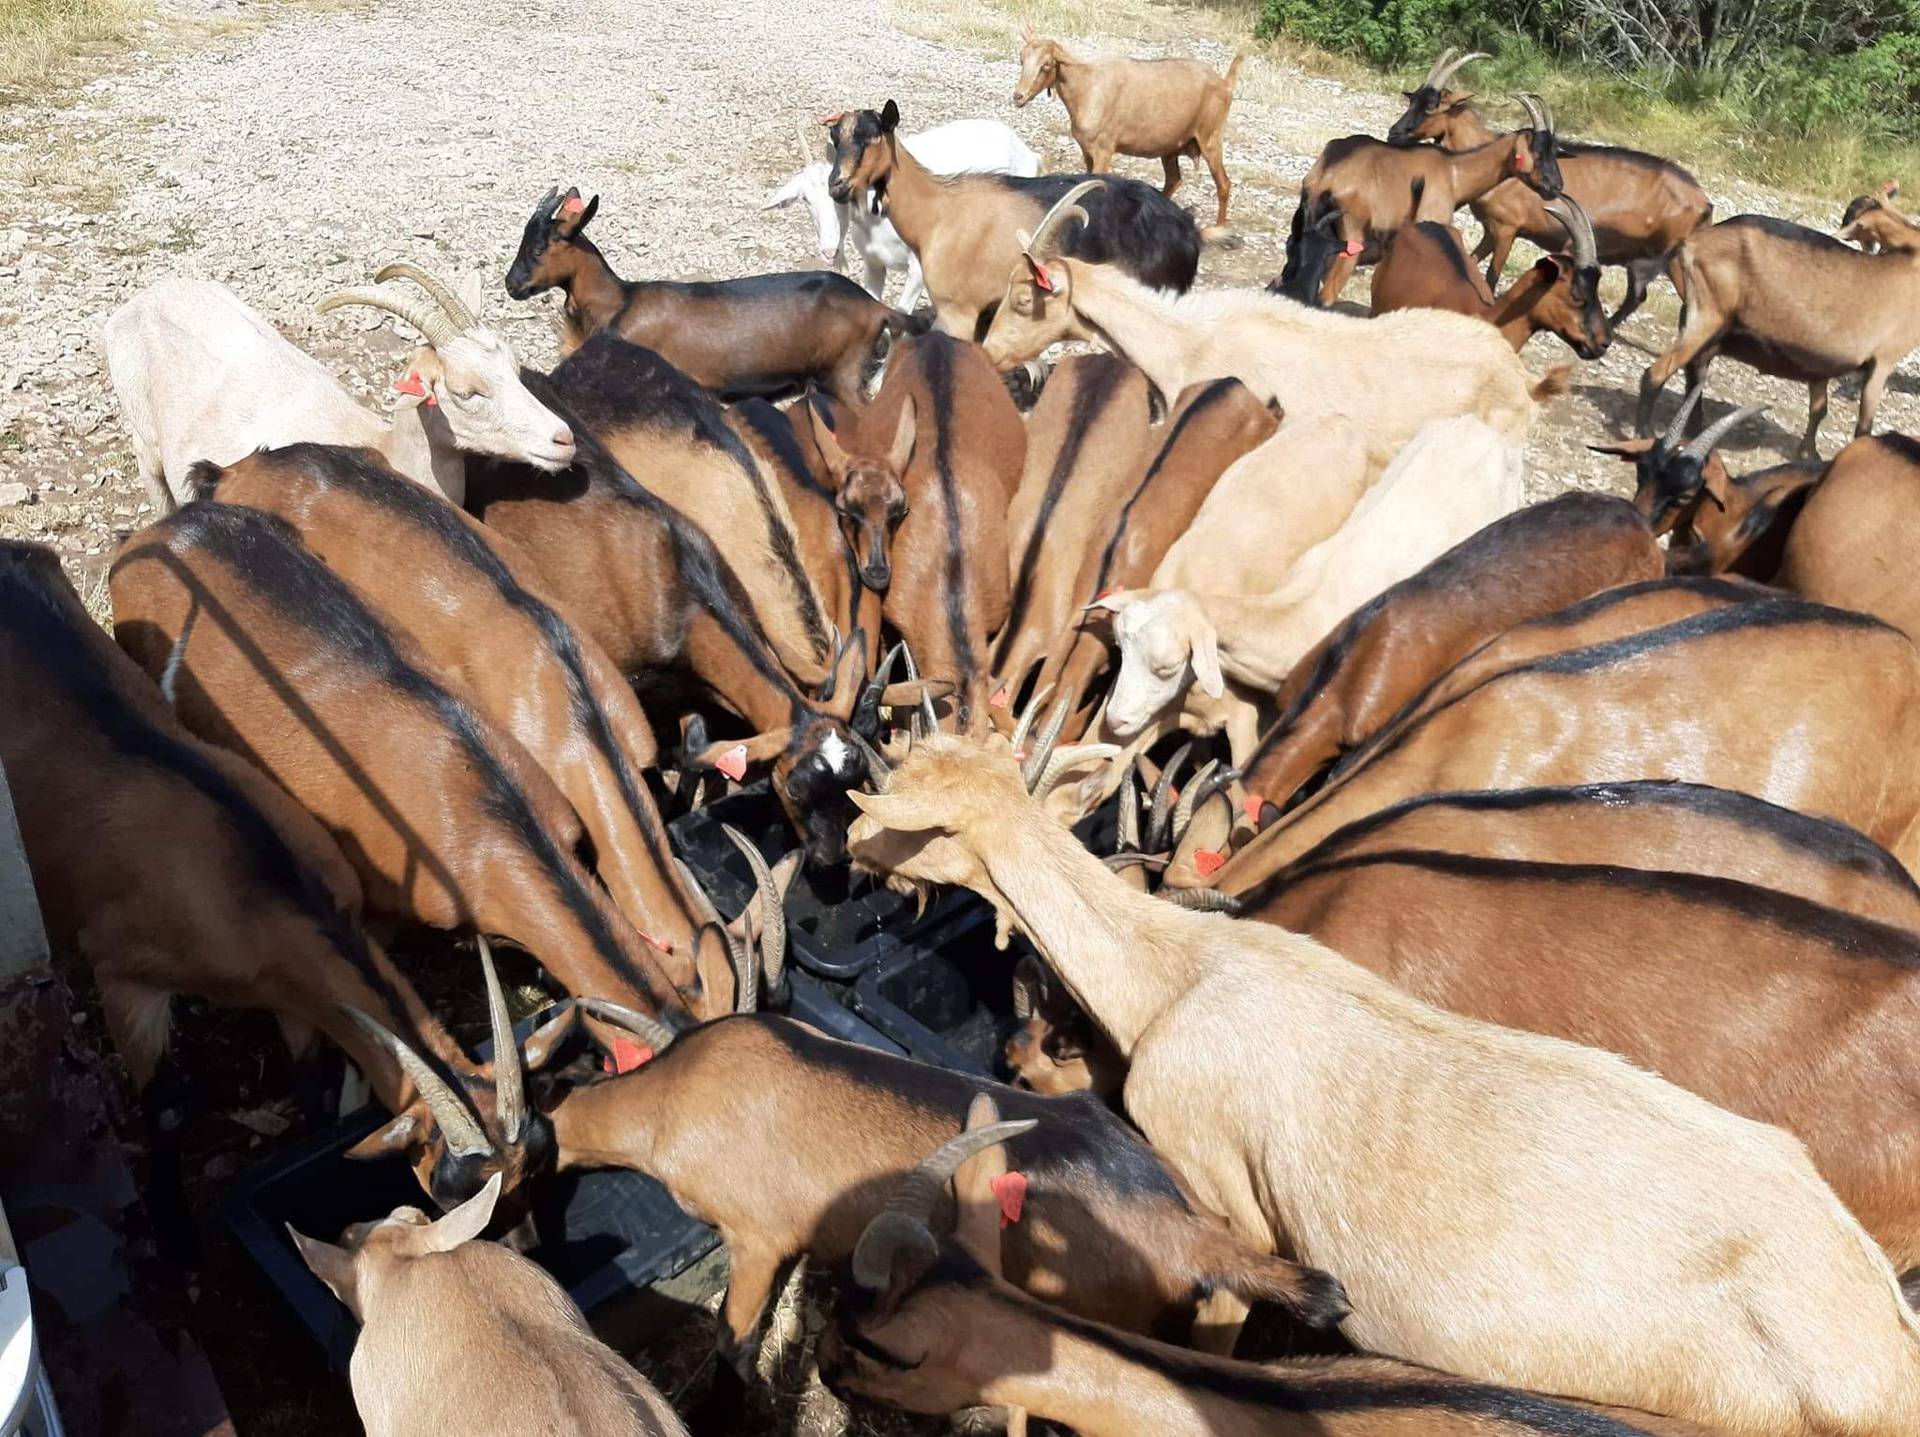 VIDEO Ivan (35) iz Pule preselio na selo da čuva koze: 'Imam ih stotinjak, baš svakoj znam ime'